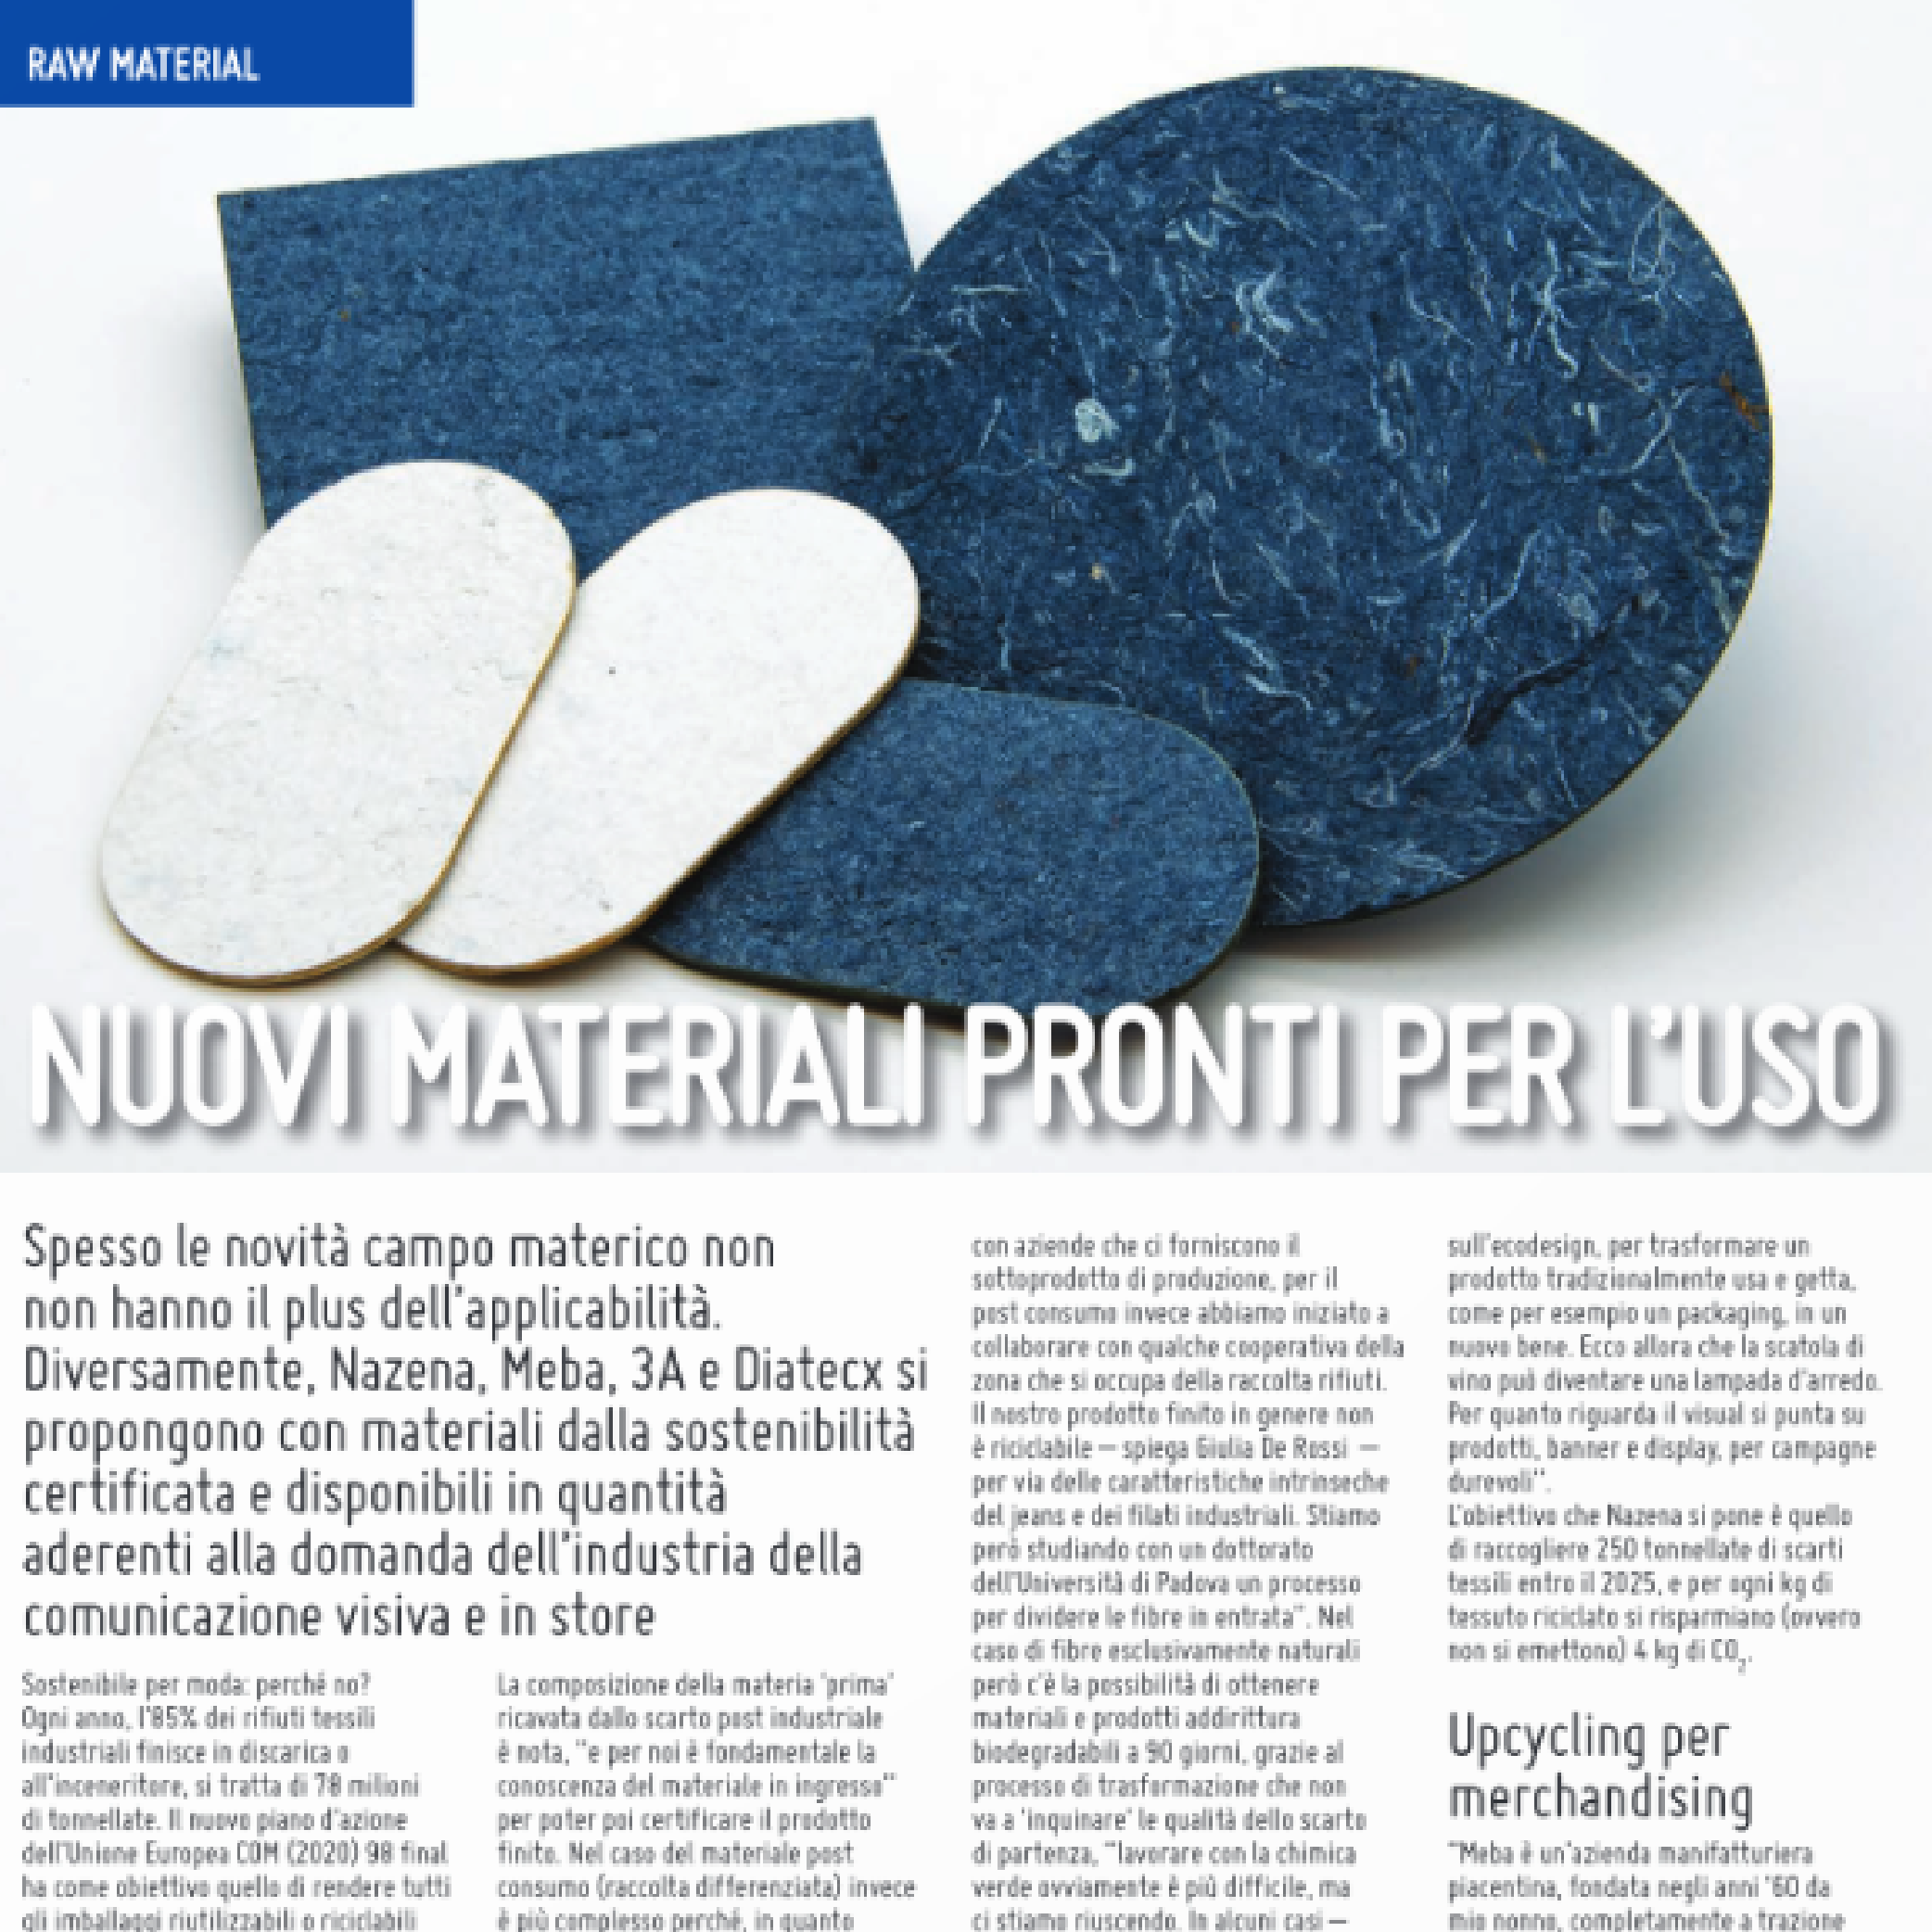 Nuovi materiali pronti per l'uso - Display Italia Magazine sui materiali sostenibili